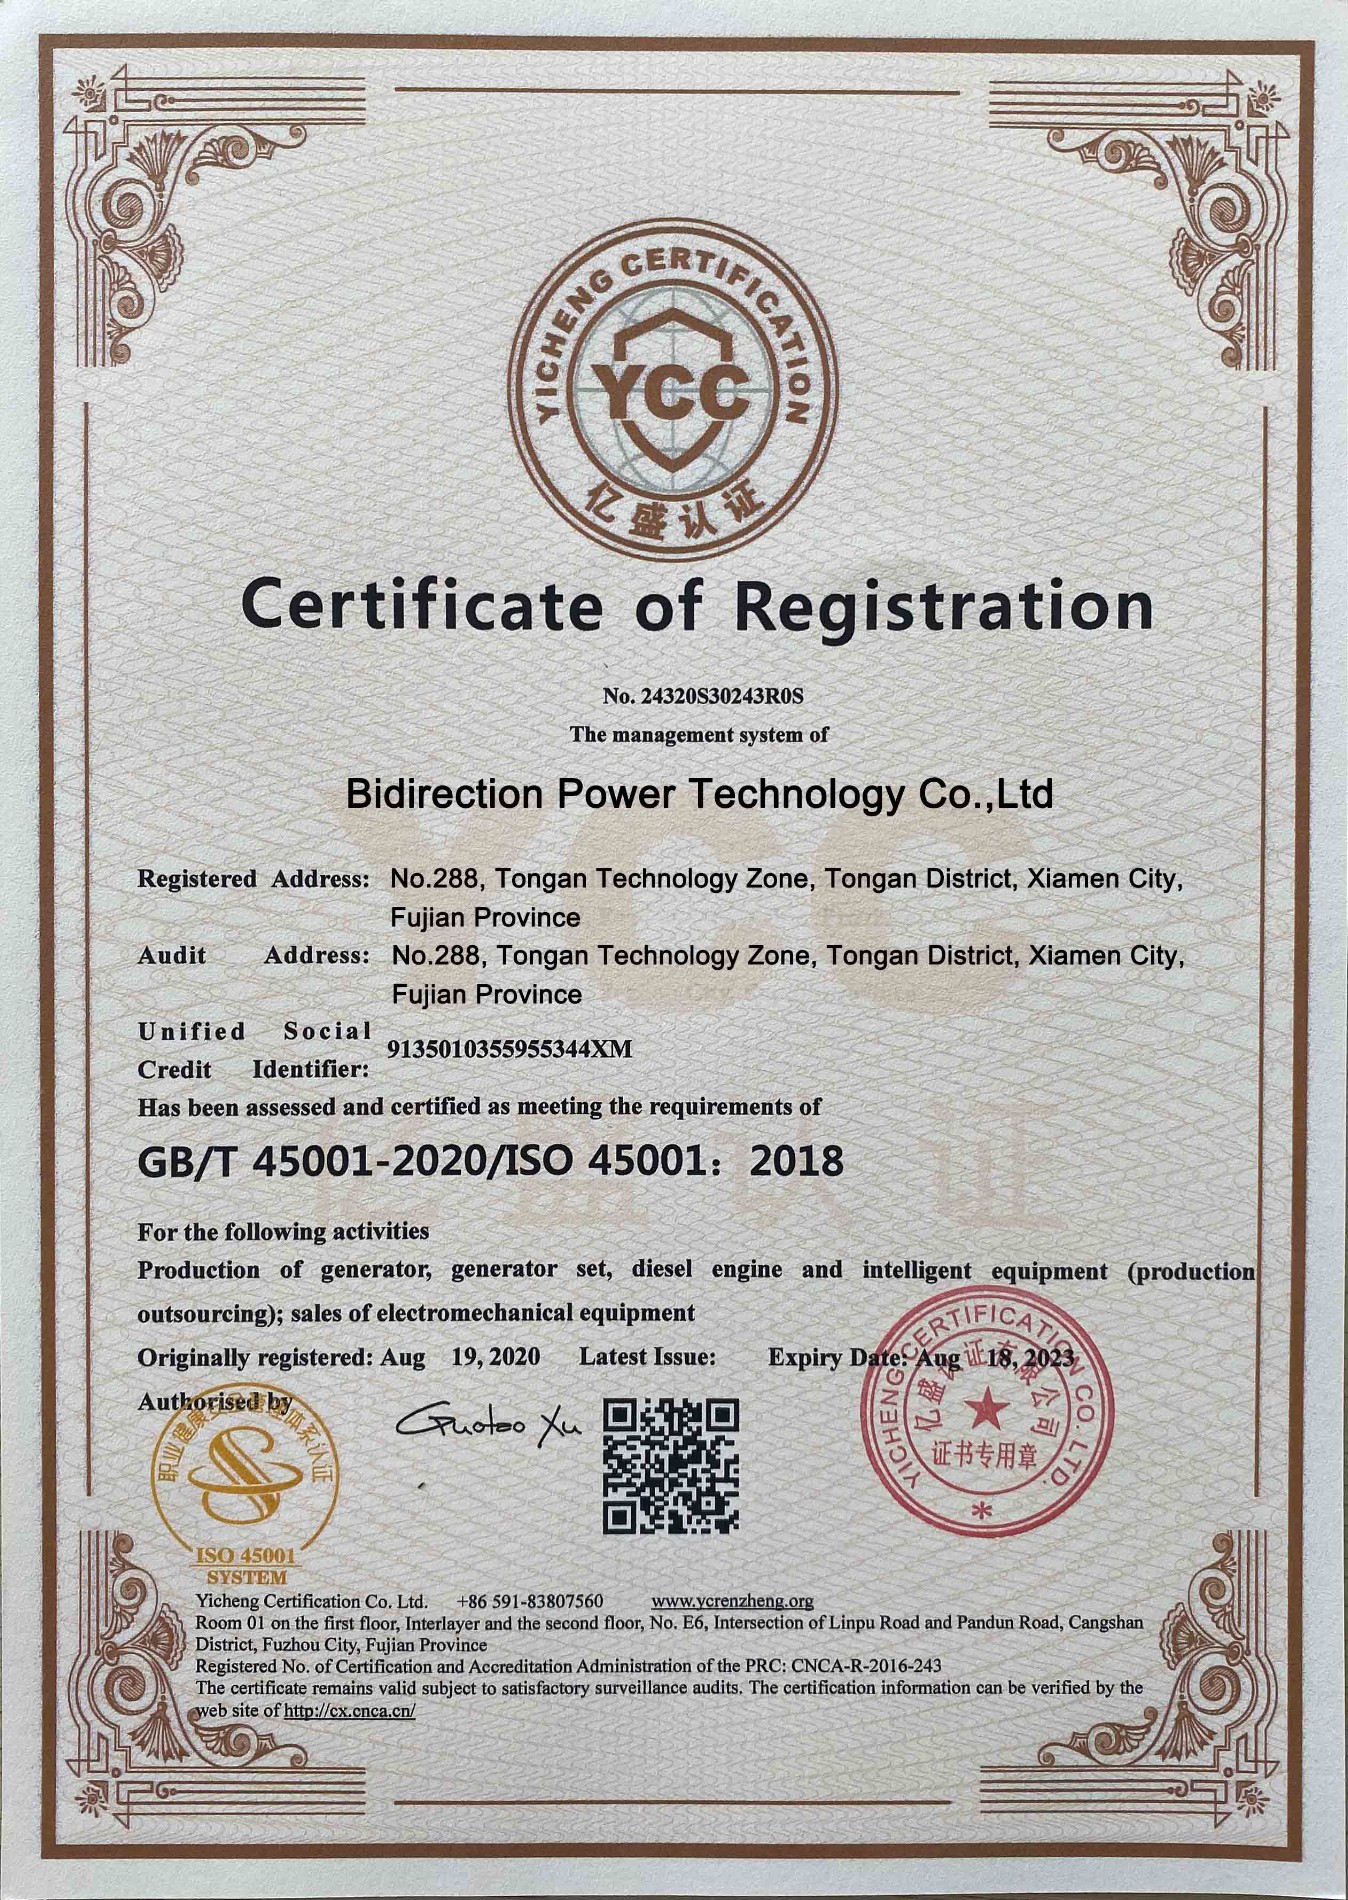 تقنية طاقة ثنائية الاتجاه معتمدة بشهادة التسجيل GB / T45001-2020 / ISO 45001: 2018